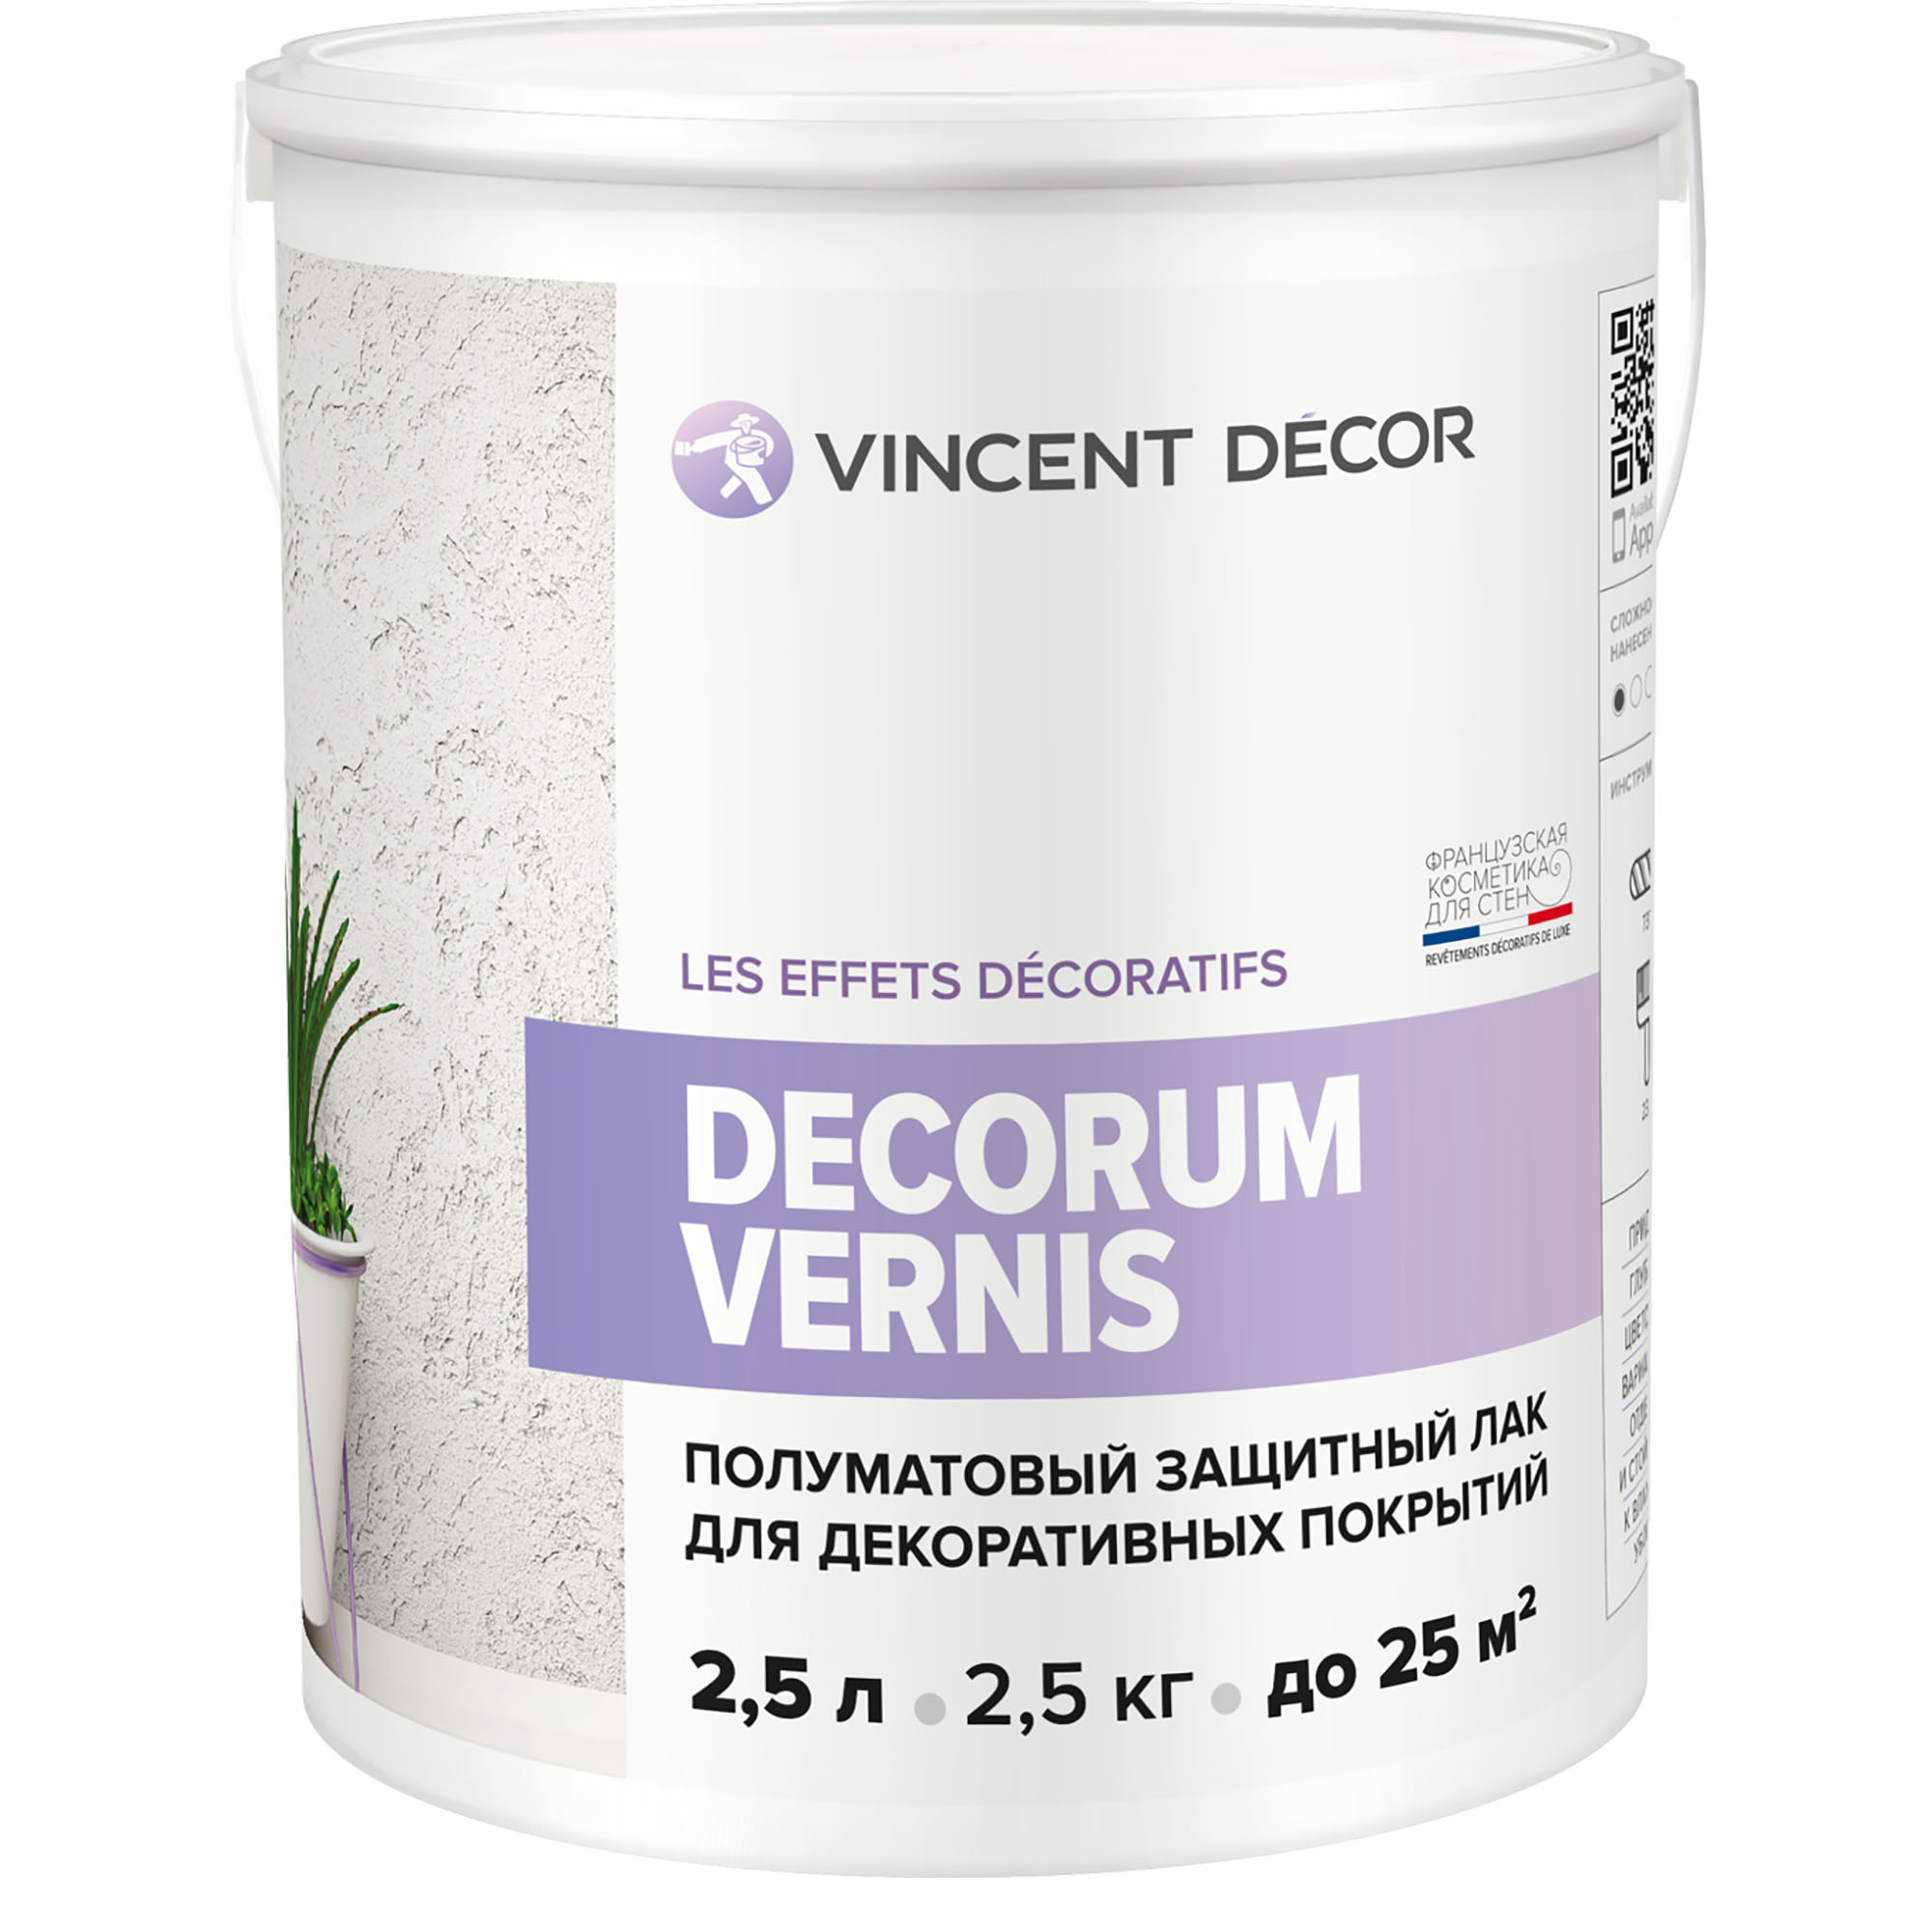 Лак защитный для декоративных покрытий Vincent Decor Decorum Vernis полуматовый 2,5 л грунтовка для декоративных покрытий vincent decor sous couche 4 5 л